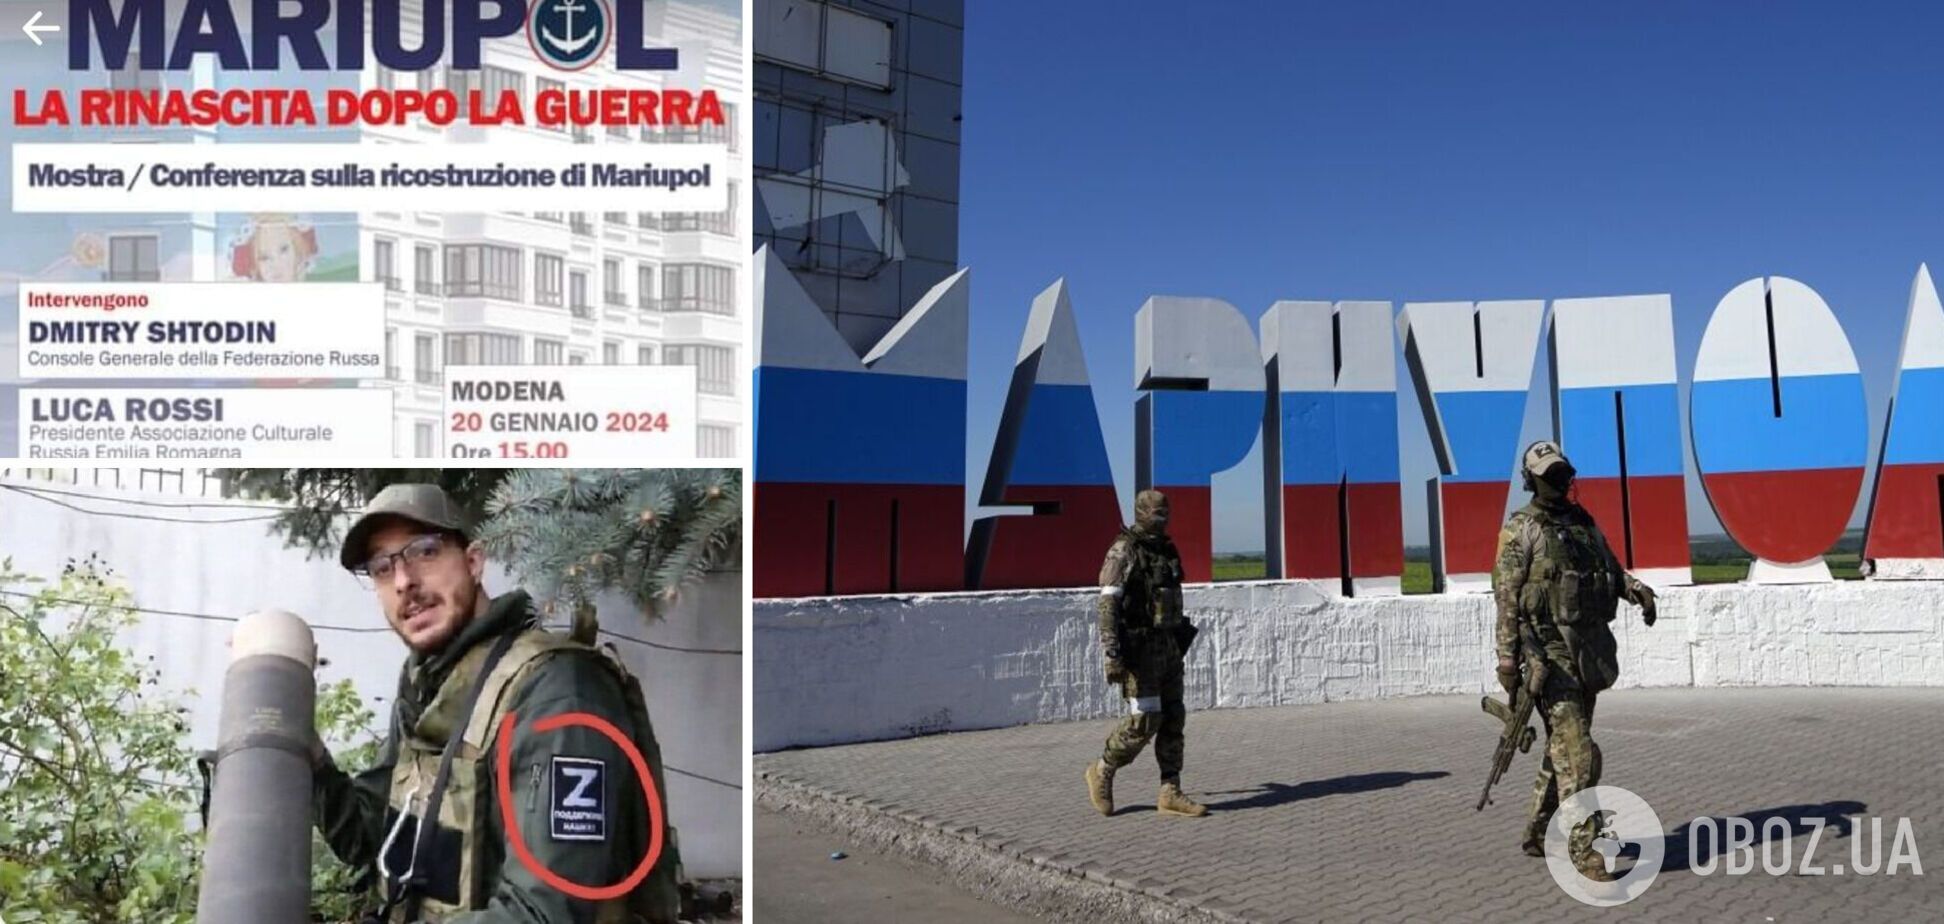 Російська пропаганда в дії: в Італії готували виставку про 'розквіт' Маріуполя під окупацією